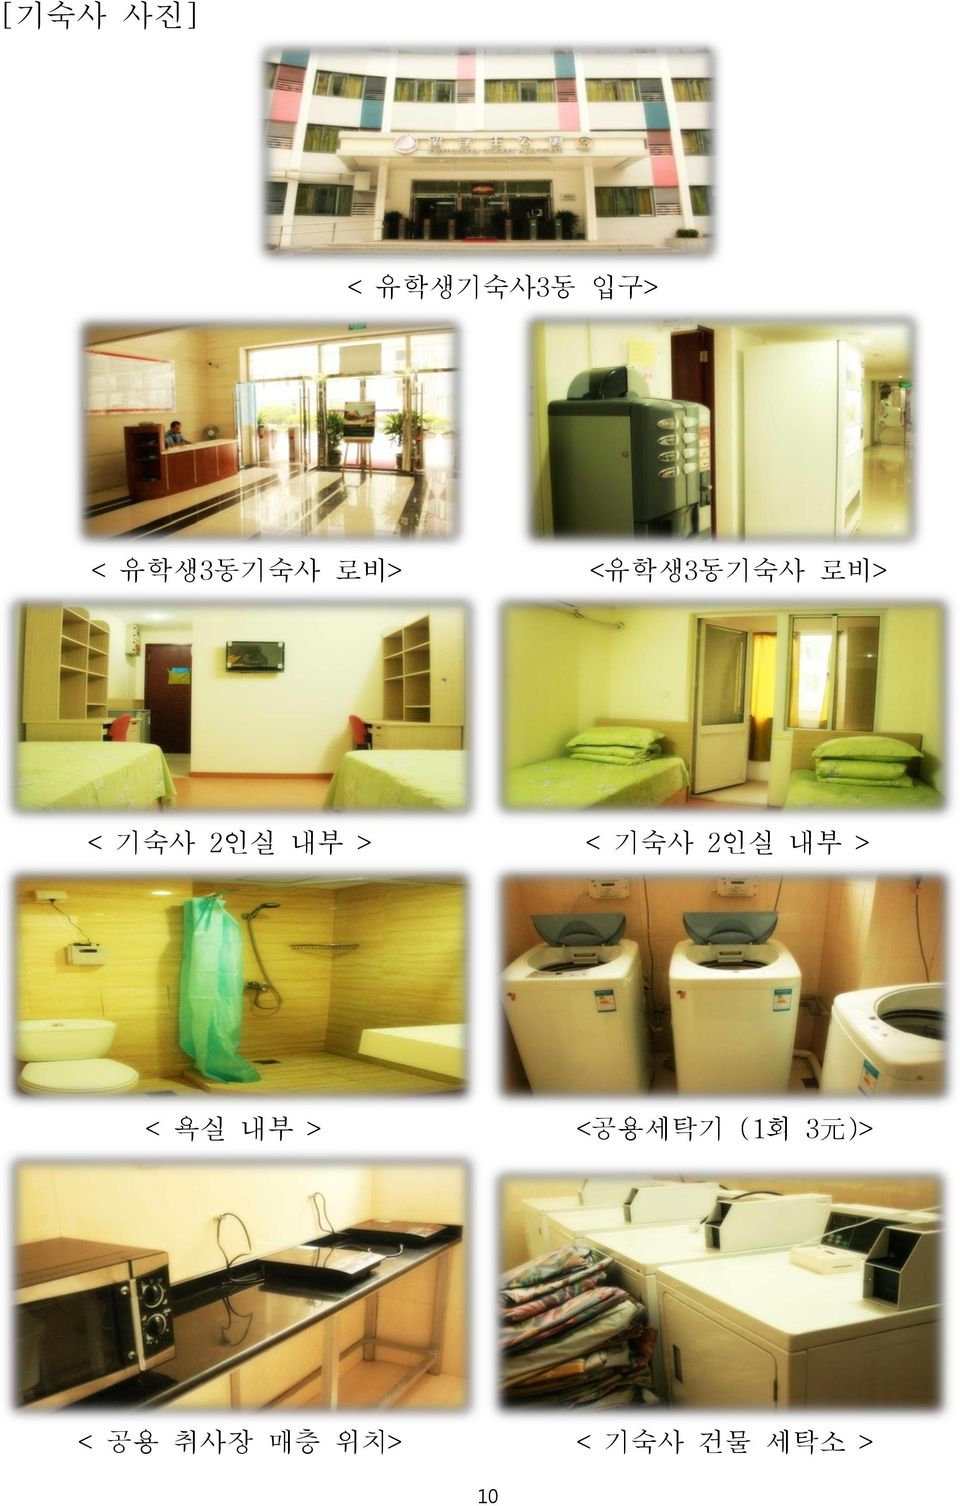 기숙사 2인실 내부 > < 욕실 내부 > <공용세탁기 (1회 3